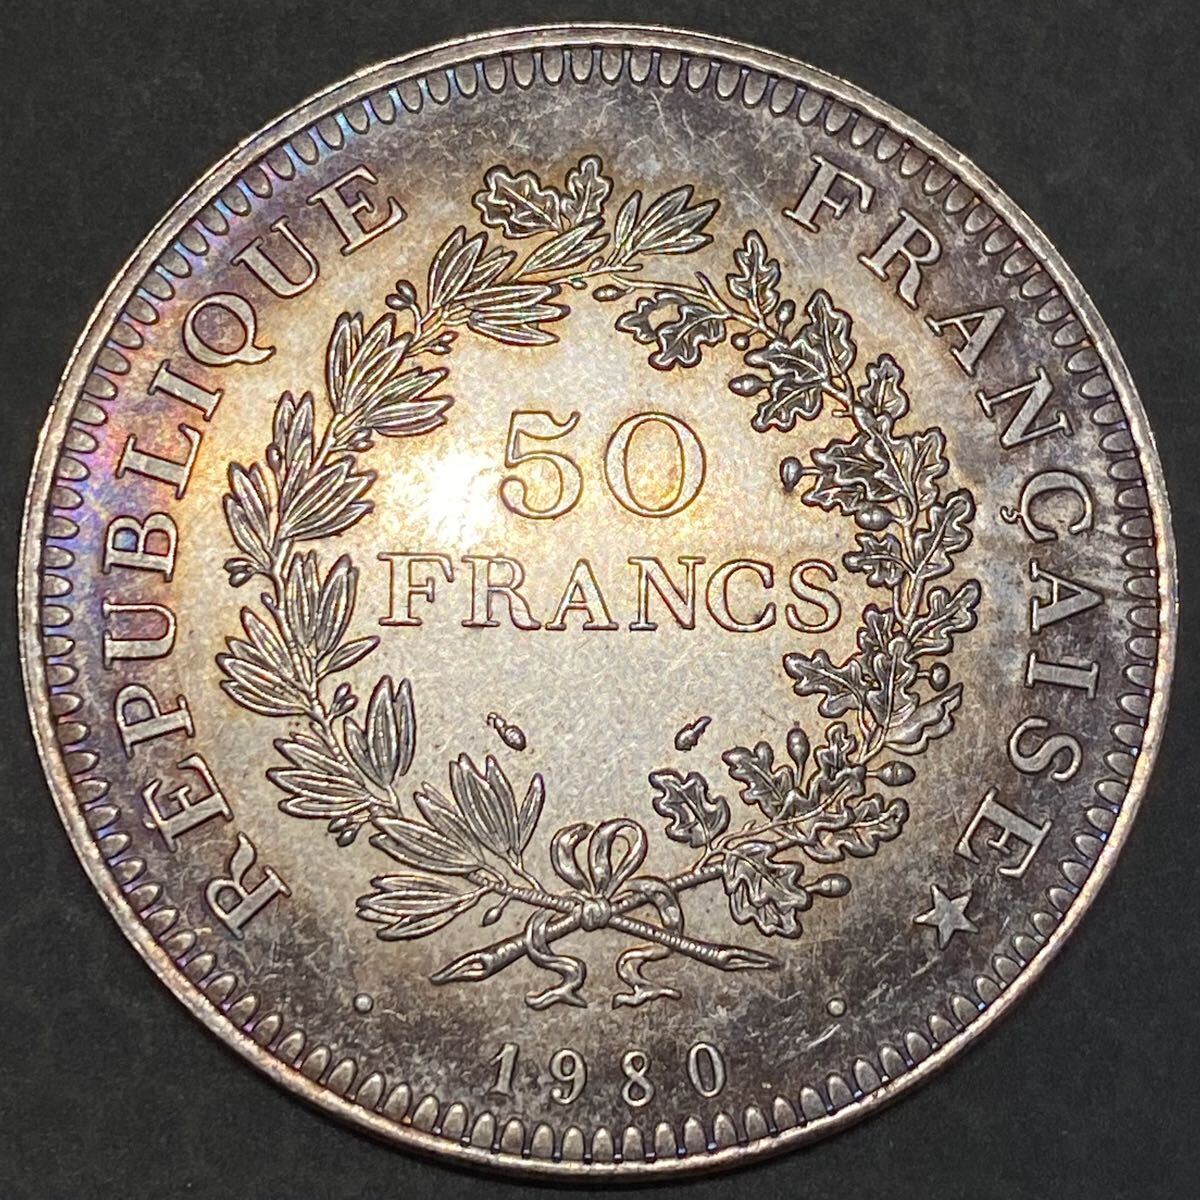 フランス古銭 50フラン銀貨 1980 約30.13g硬貨 一円貨幣 コレクション の画像2